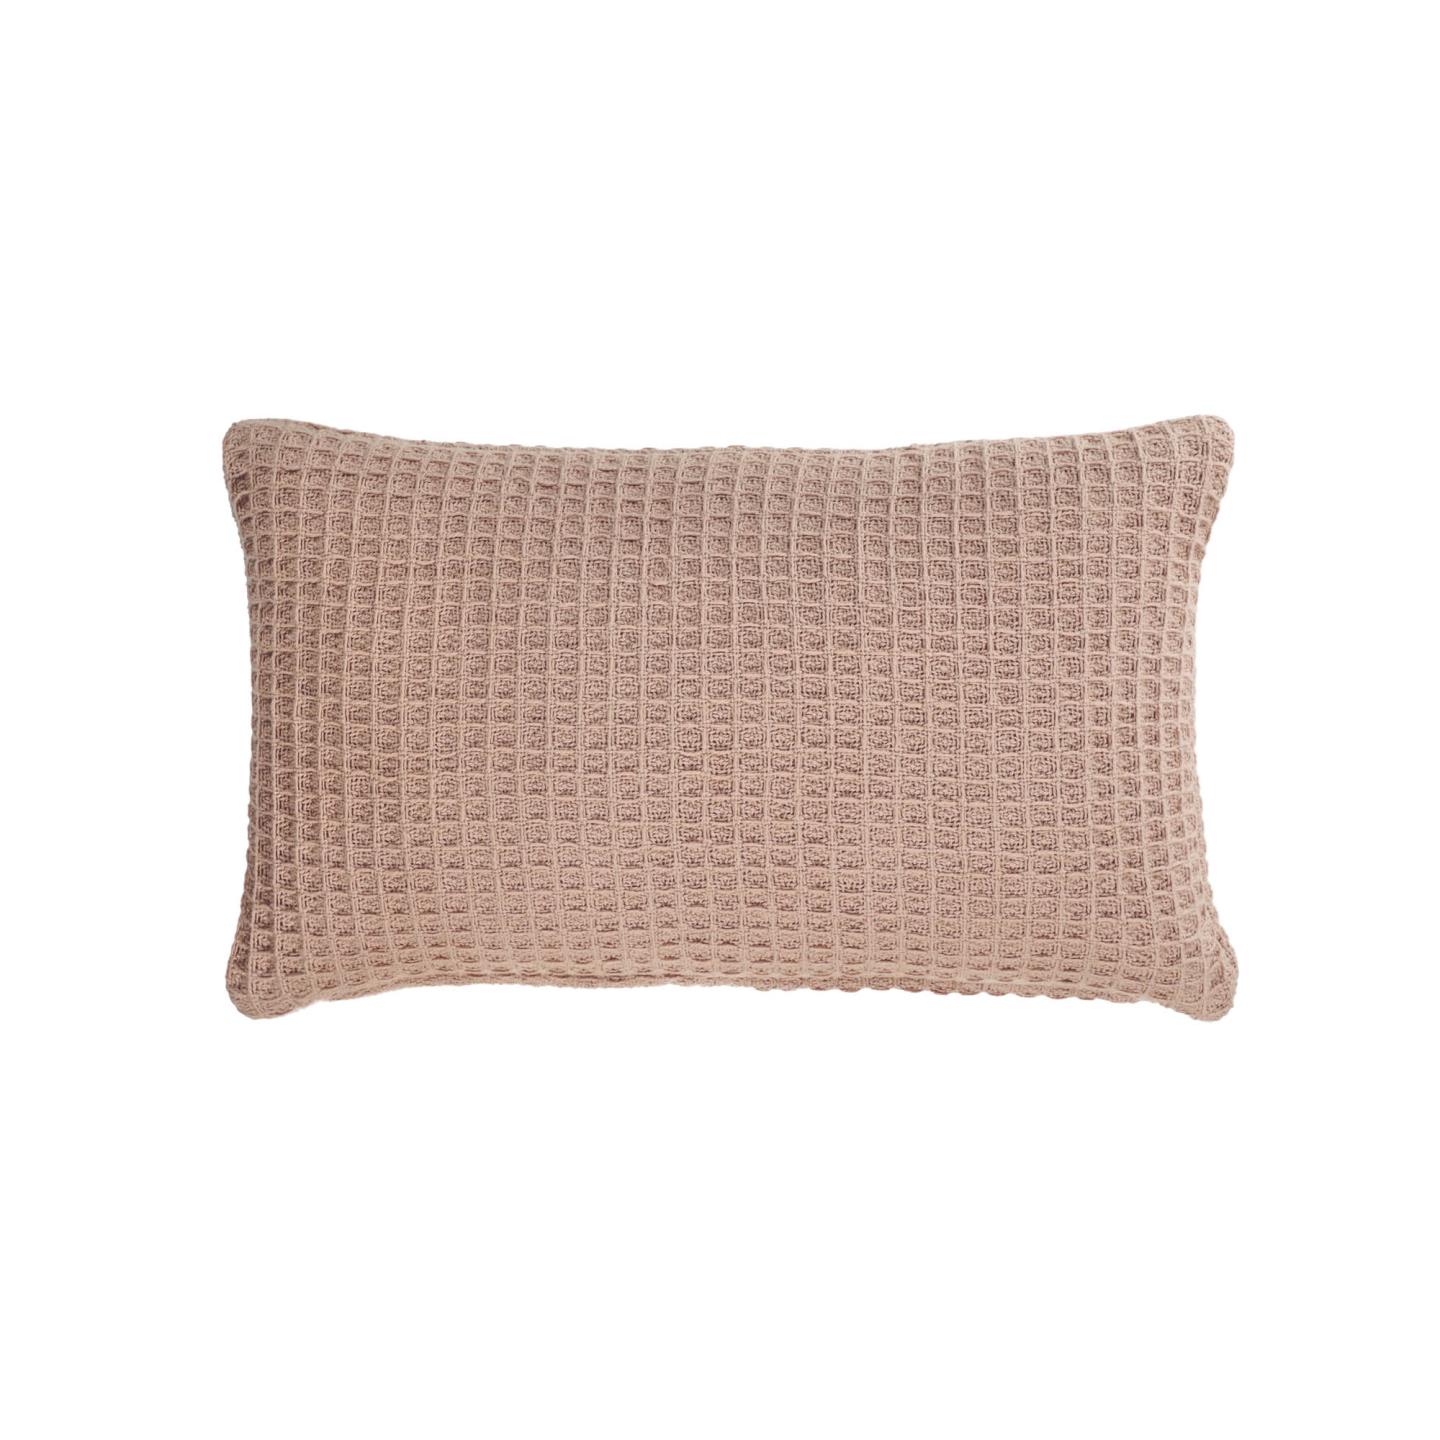 Мягкий чехол для подушки Shallowy из 100% хлопка розового цвета 30 x 50 см